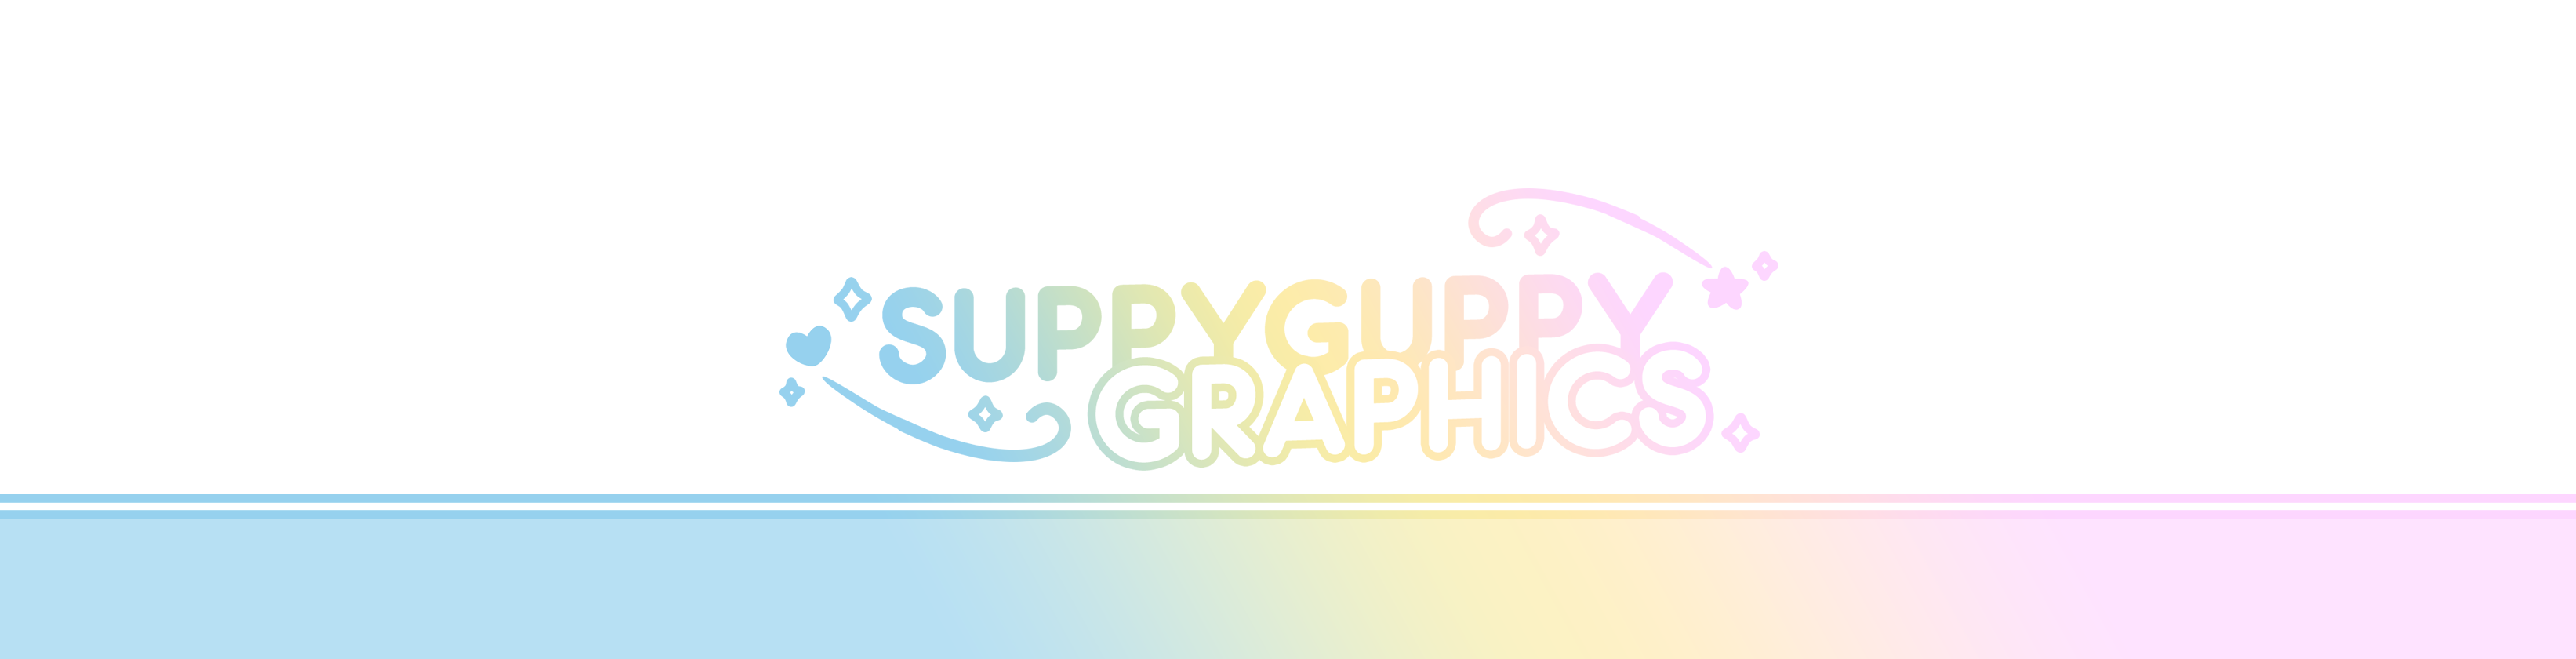 suppyguppy graphics